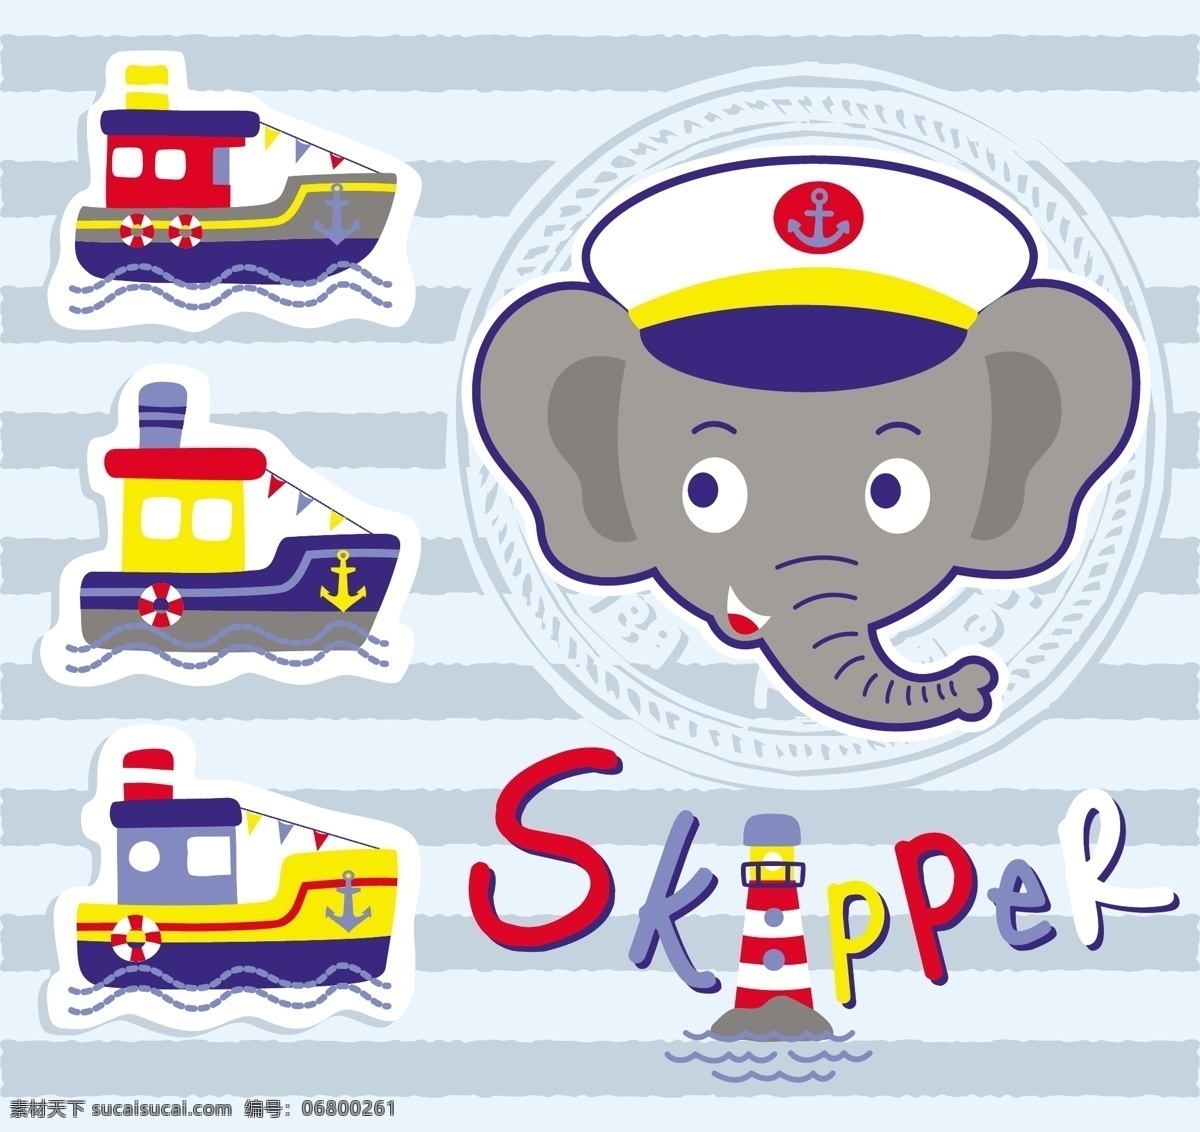 可爱 船长 大象 儿童 插画 海浪 轮船 船只 儿童插画 蓝白色帽子 彩色英文 蓝色波浪